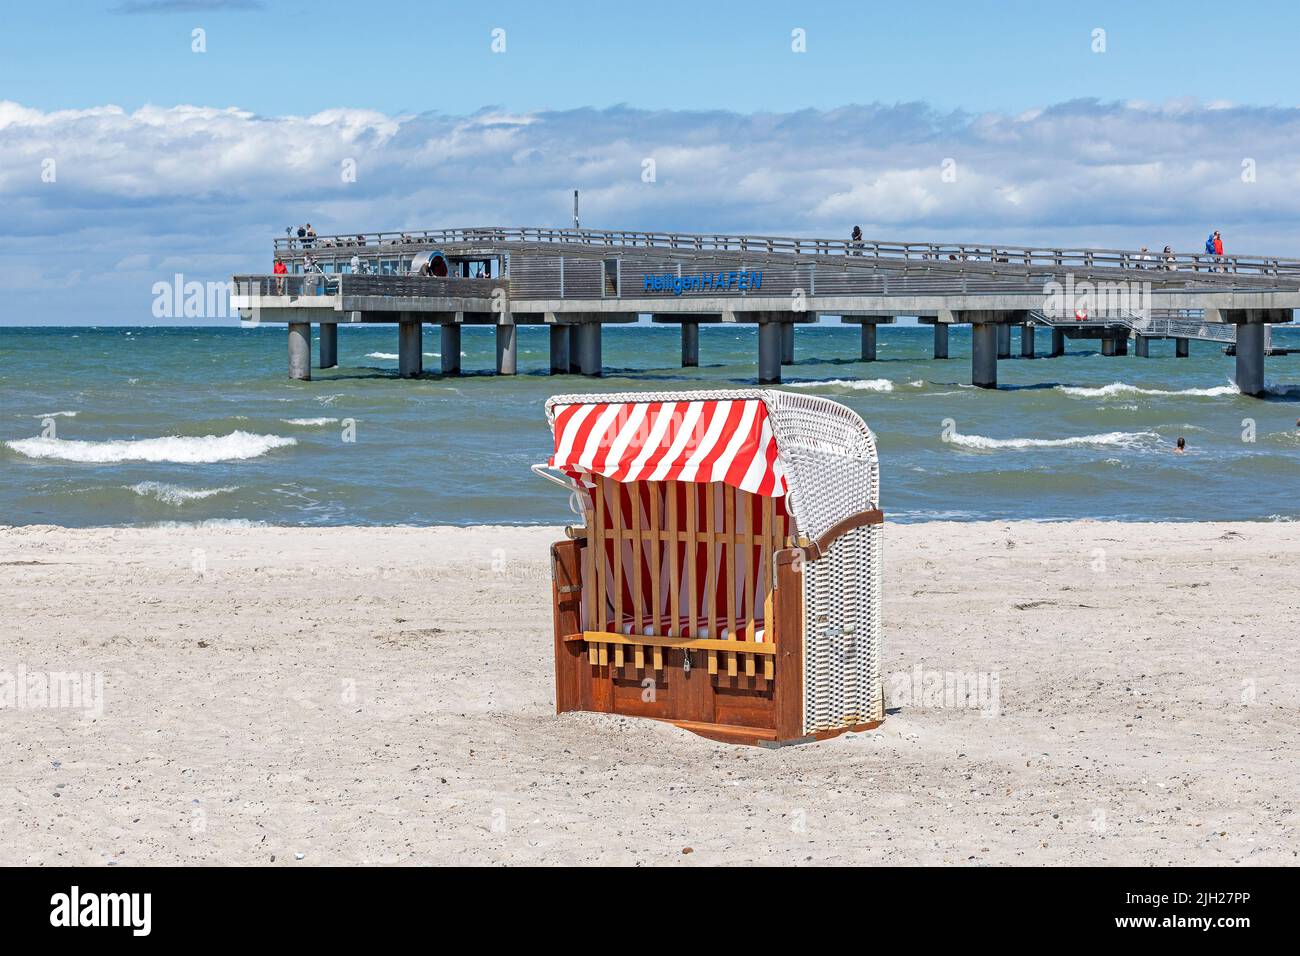 Pier, beach chair, Steinwarder Peninsula, Heiligenhafen, Schleswig-Holstein, Germany Stock Photo